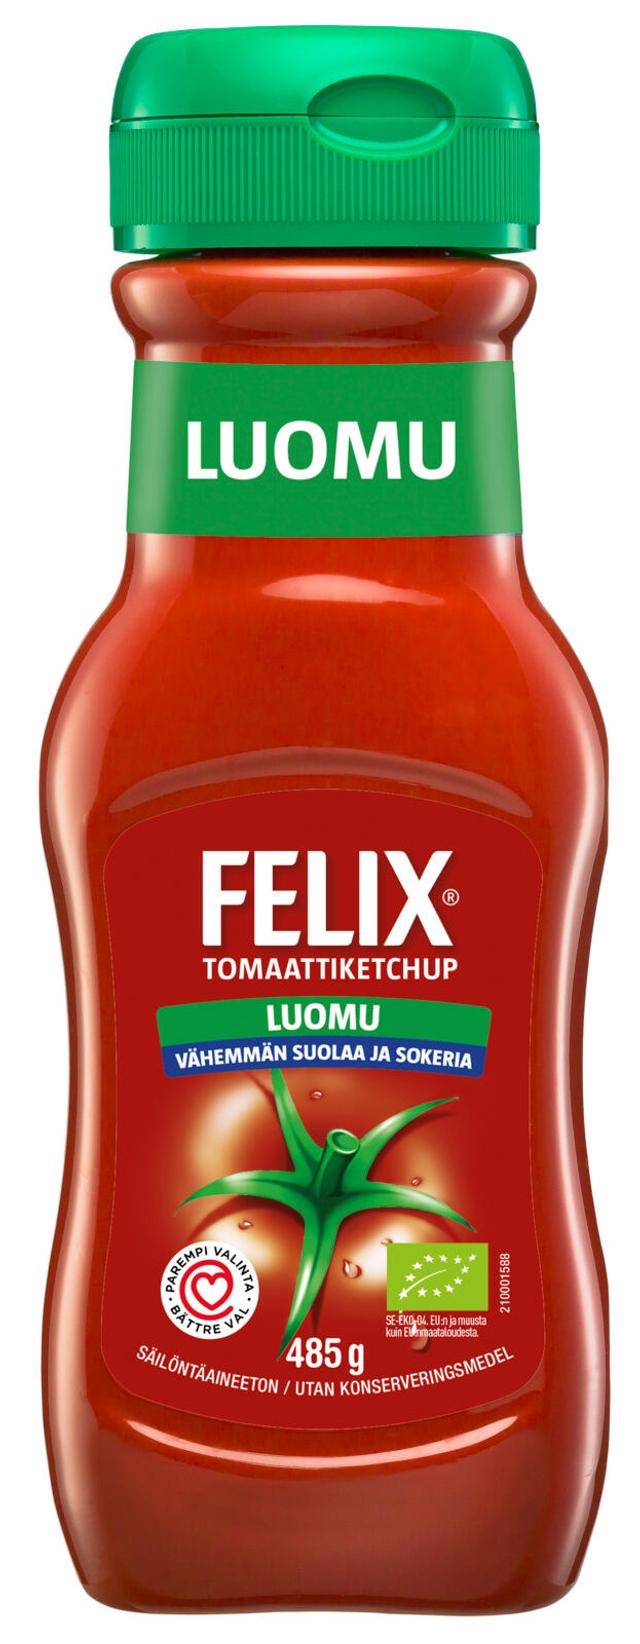 Felix luomu vähemmän suolaa ja sokeria ketchup 485g